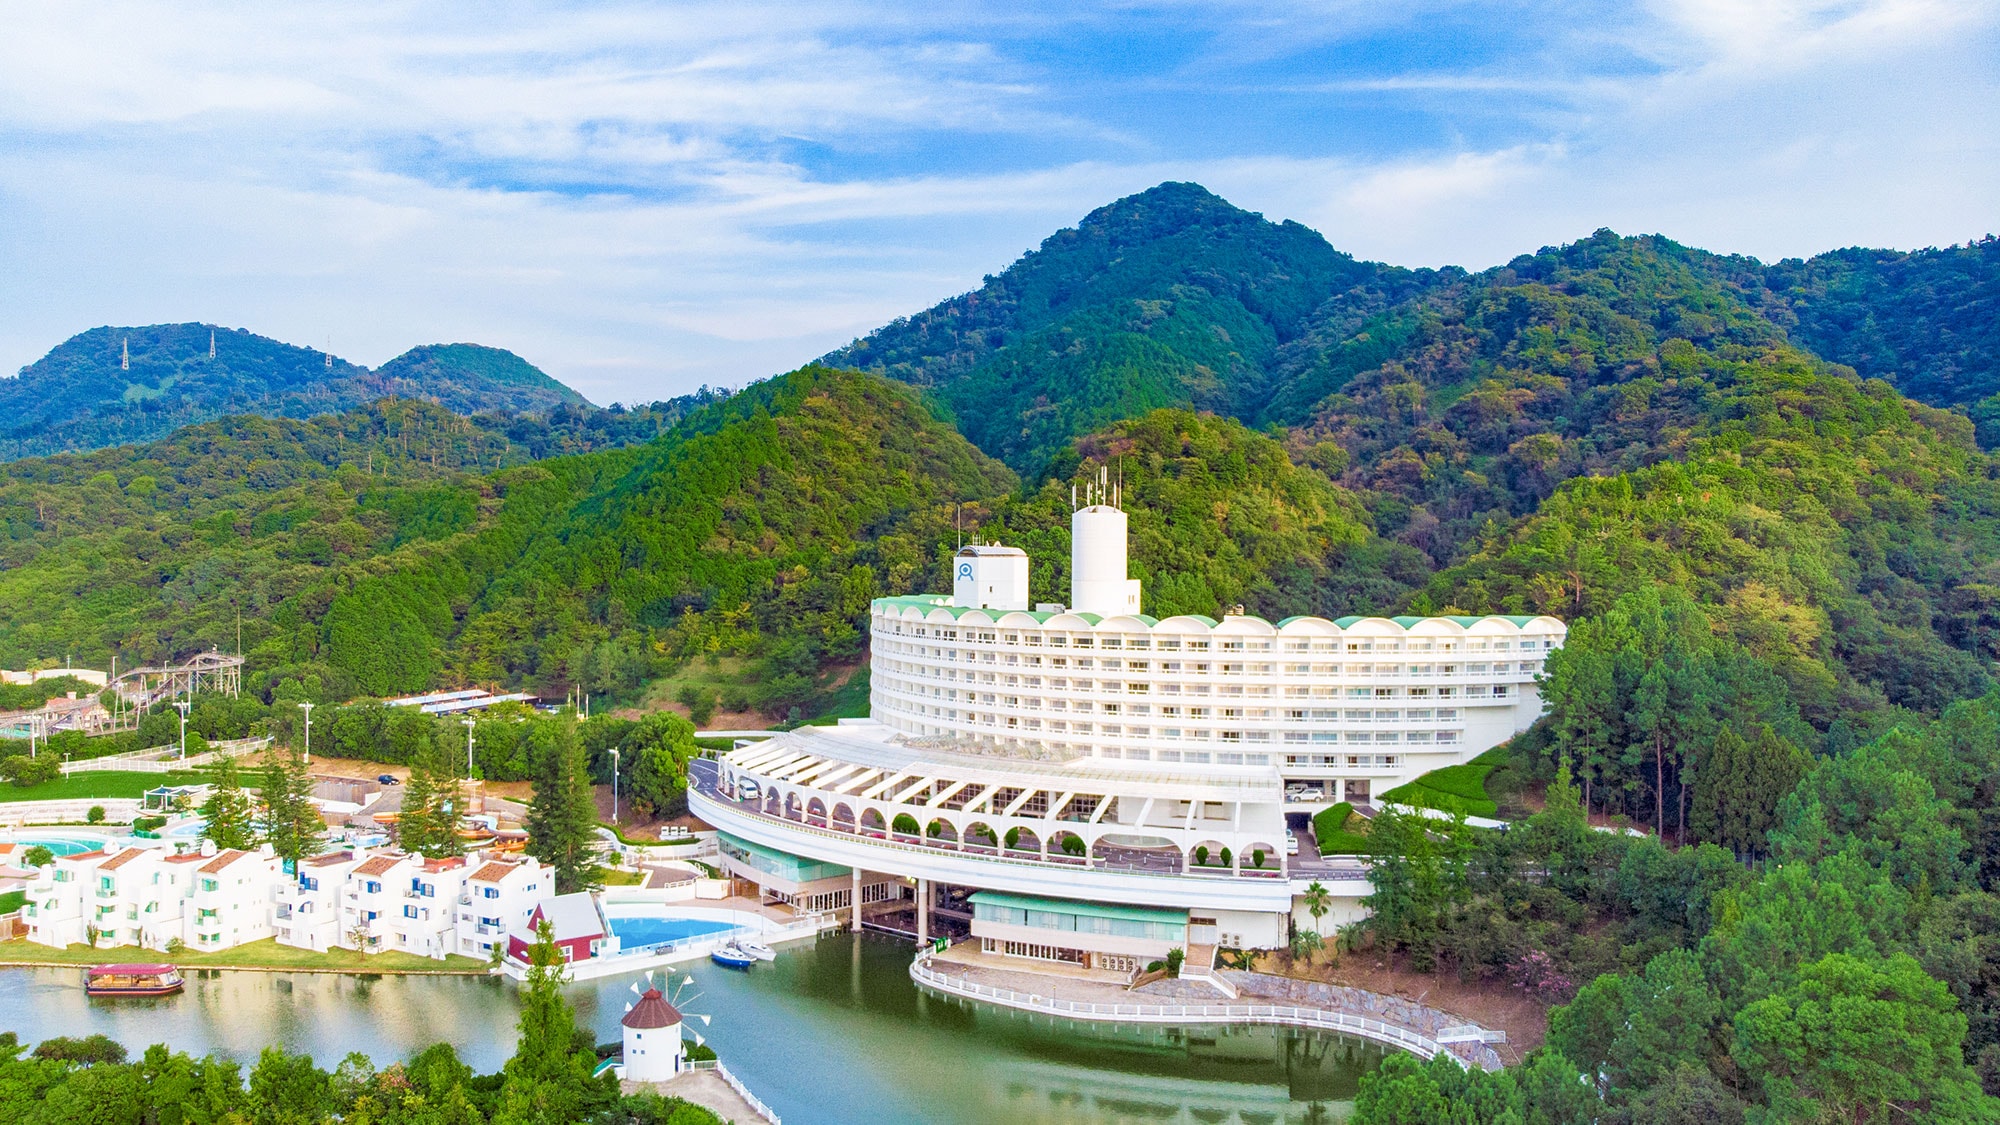 Sebuah hotel resor yang dikelilingi oleh hutan dan danau, ukuran baru